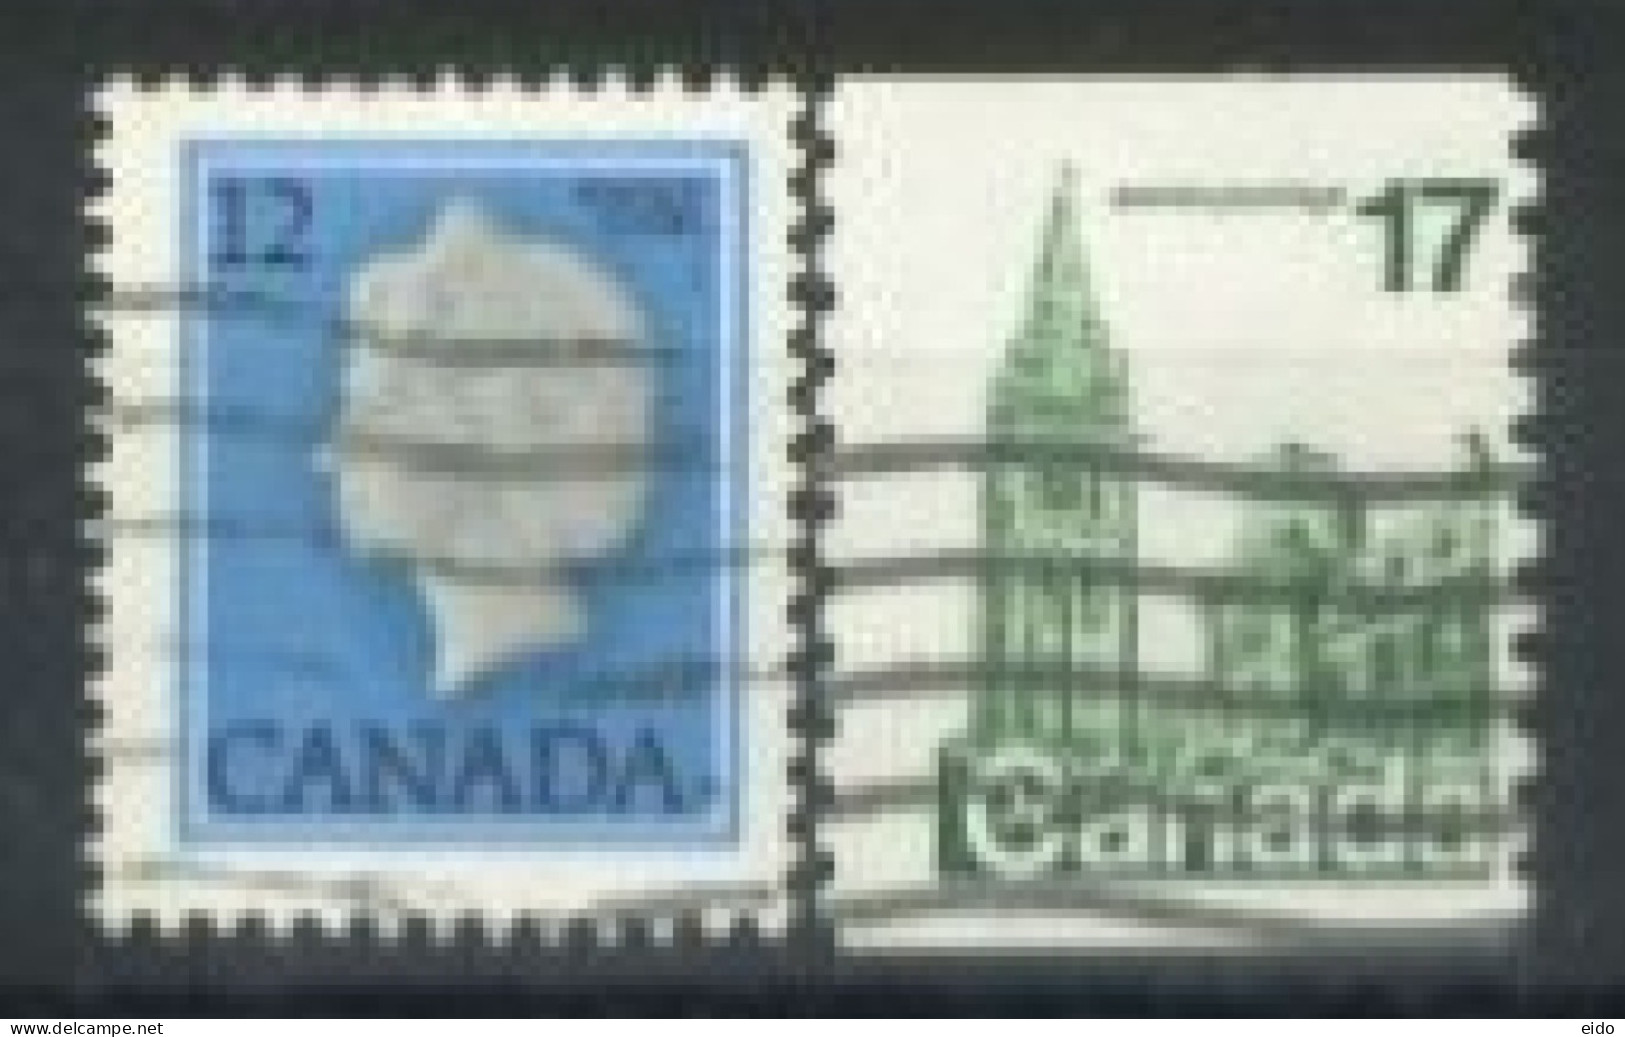 CANADA - 1977, QUEEN ELIZABETH II & HOUSE OF PARLIAMENT STAMPS SET OF 2, USED. - Gebruikt